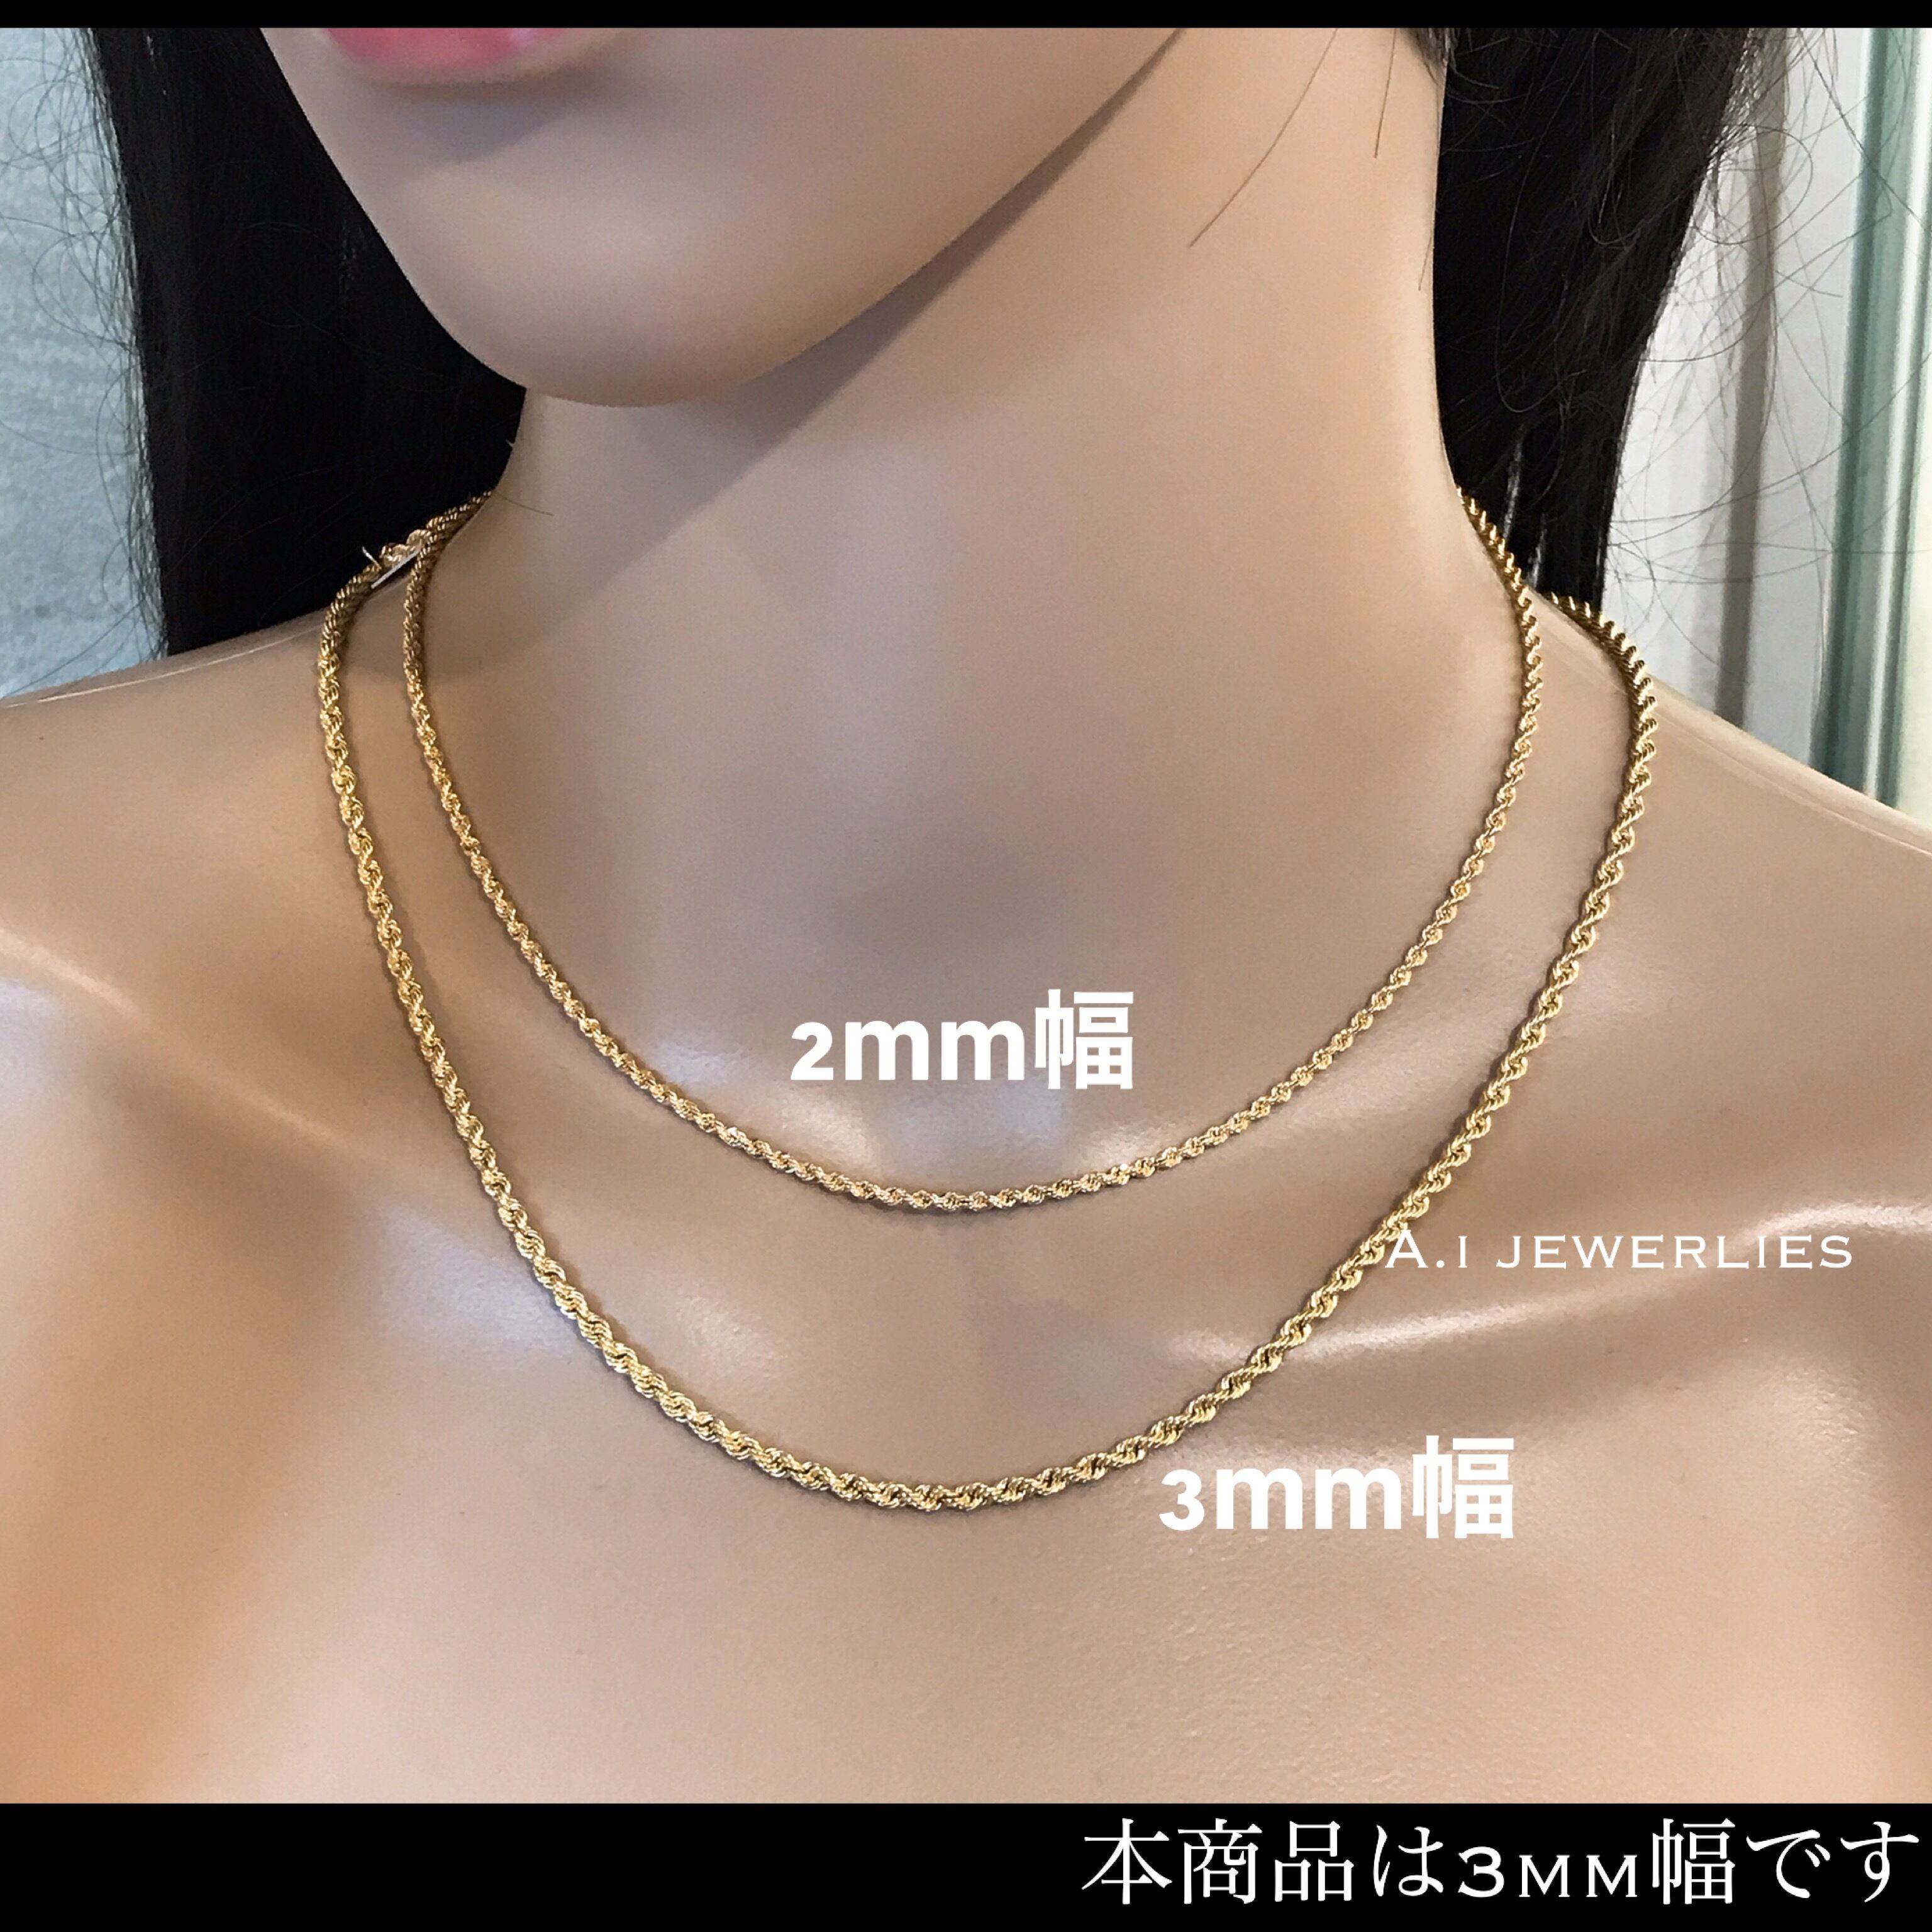 ネックレス 18金 ロープ K18 3mm幅 50cm メンズ推奨サイズ K18 Rope Necklace 50cm A I Jewelries エイアイジュエリーズ